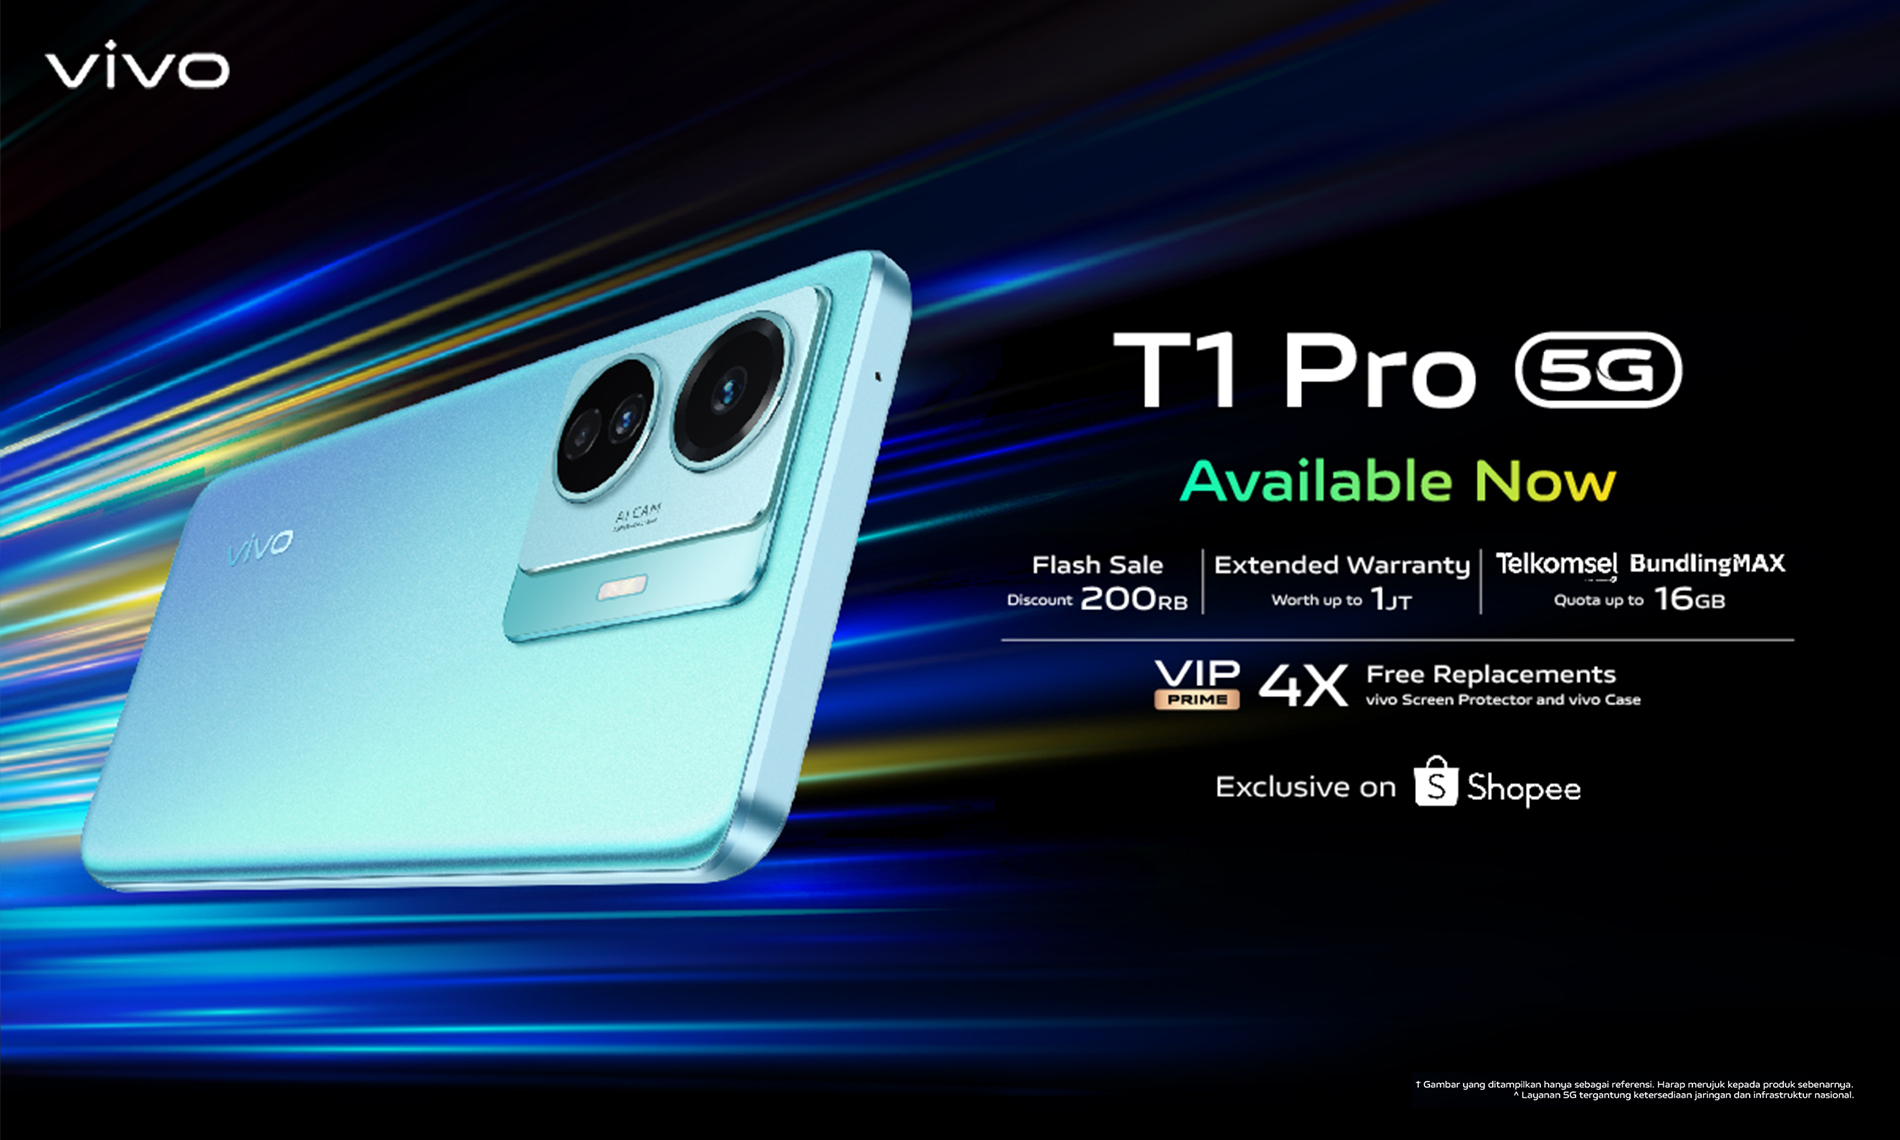 vivo T1 Pro 5G : Dapatkan smartphone gaming flash sale 200RB di bulan May 2022